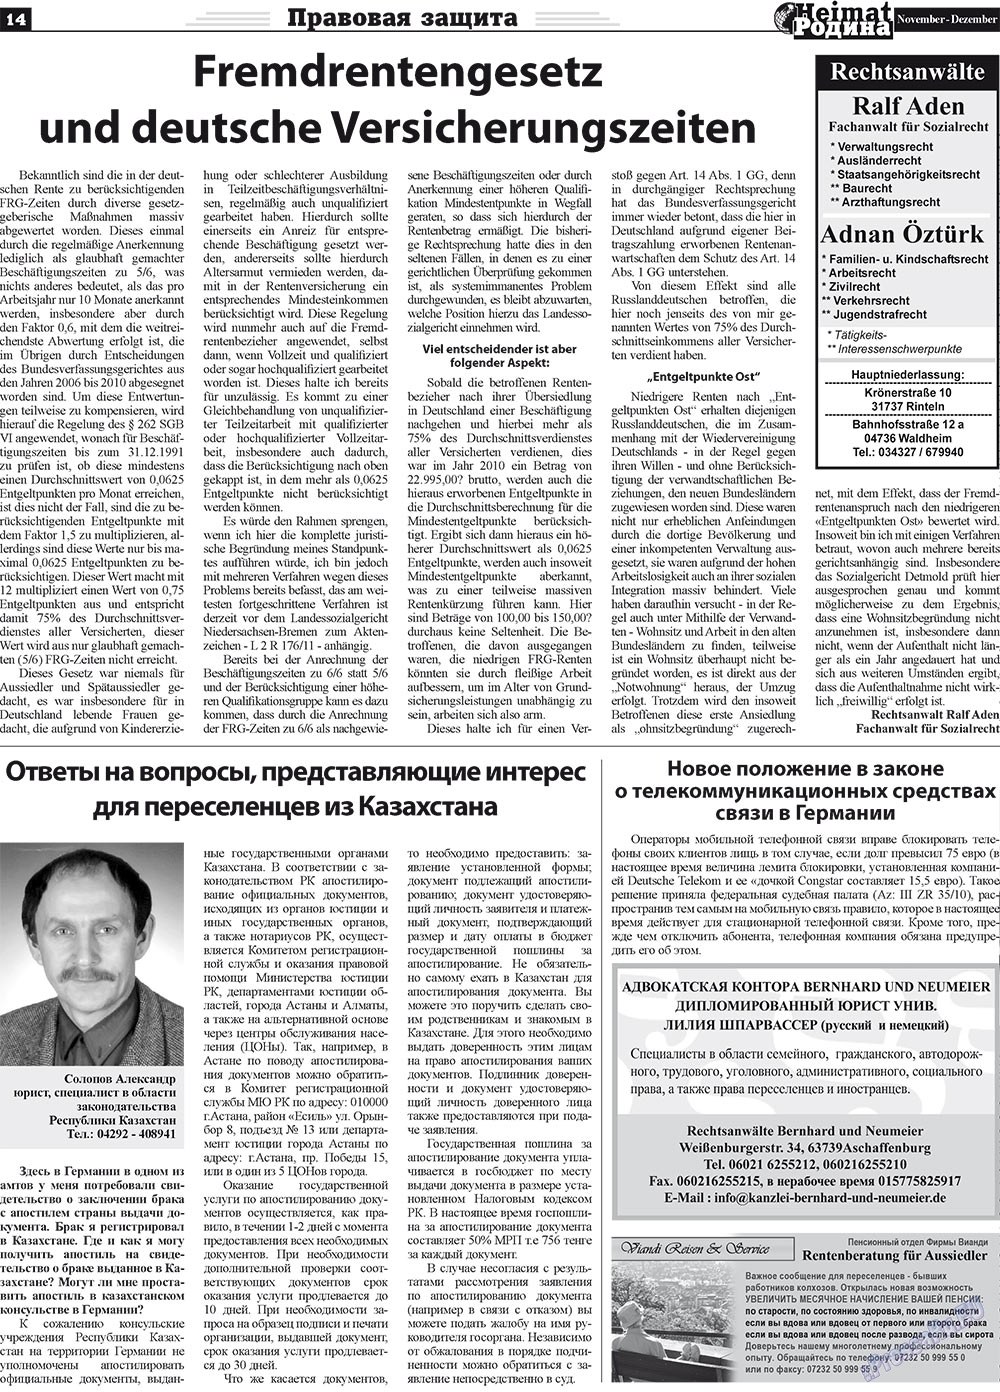 Heimat-Родина (газета). 2011 год, номер 11, стр. 14